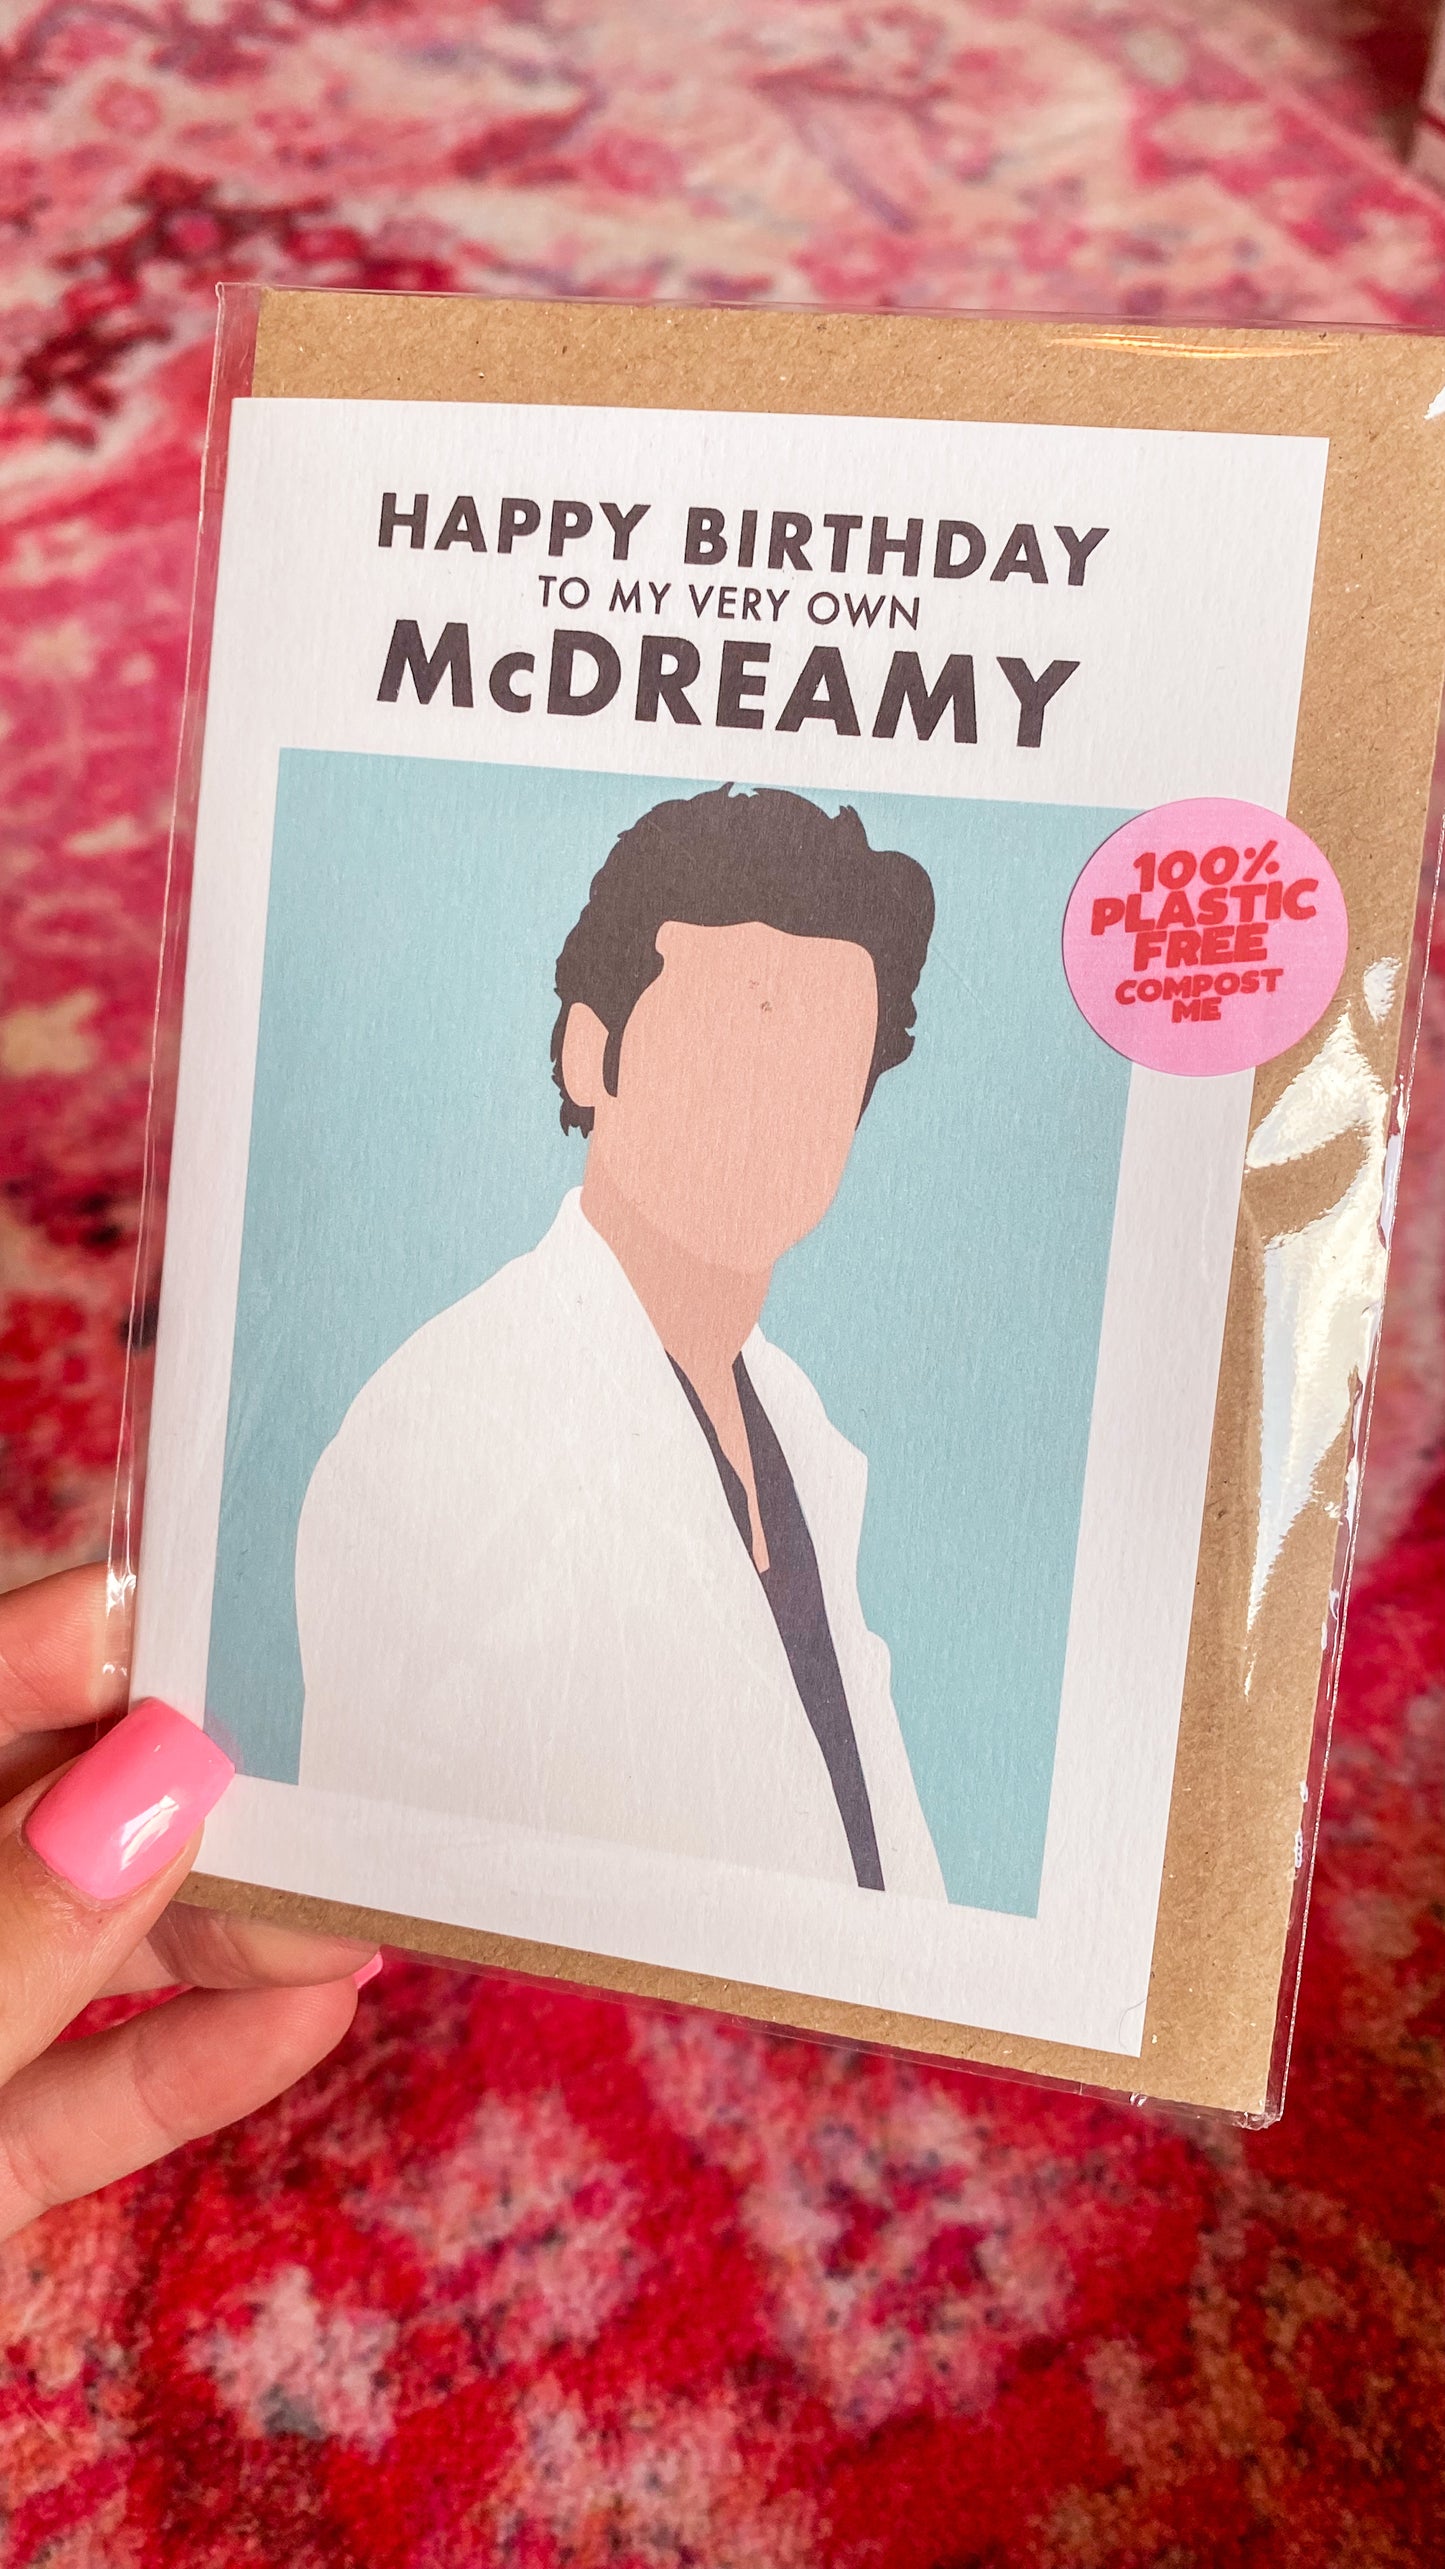 McDreamy Birthday Card